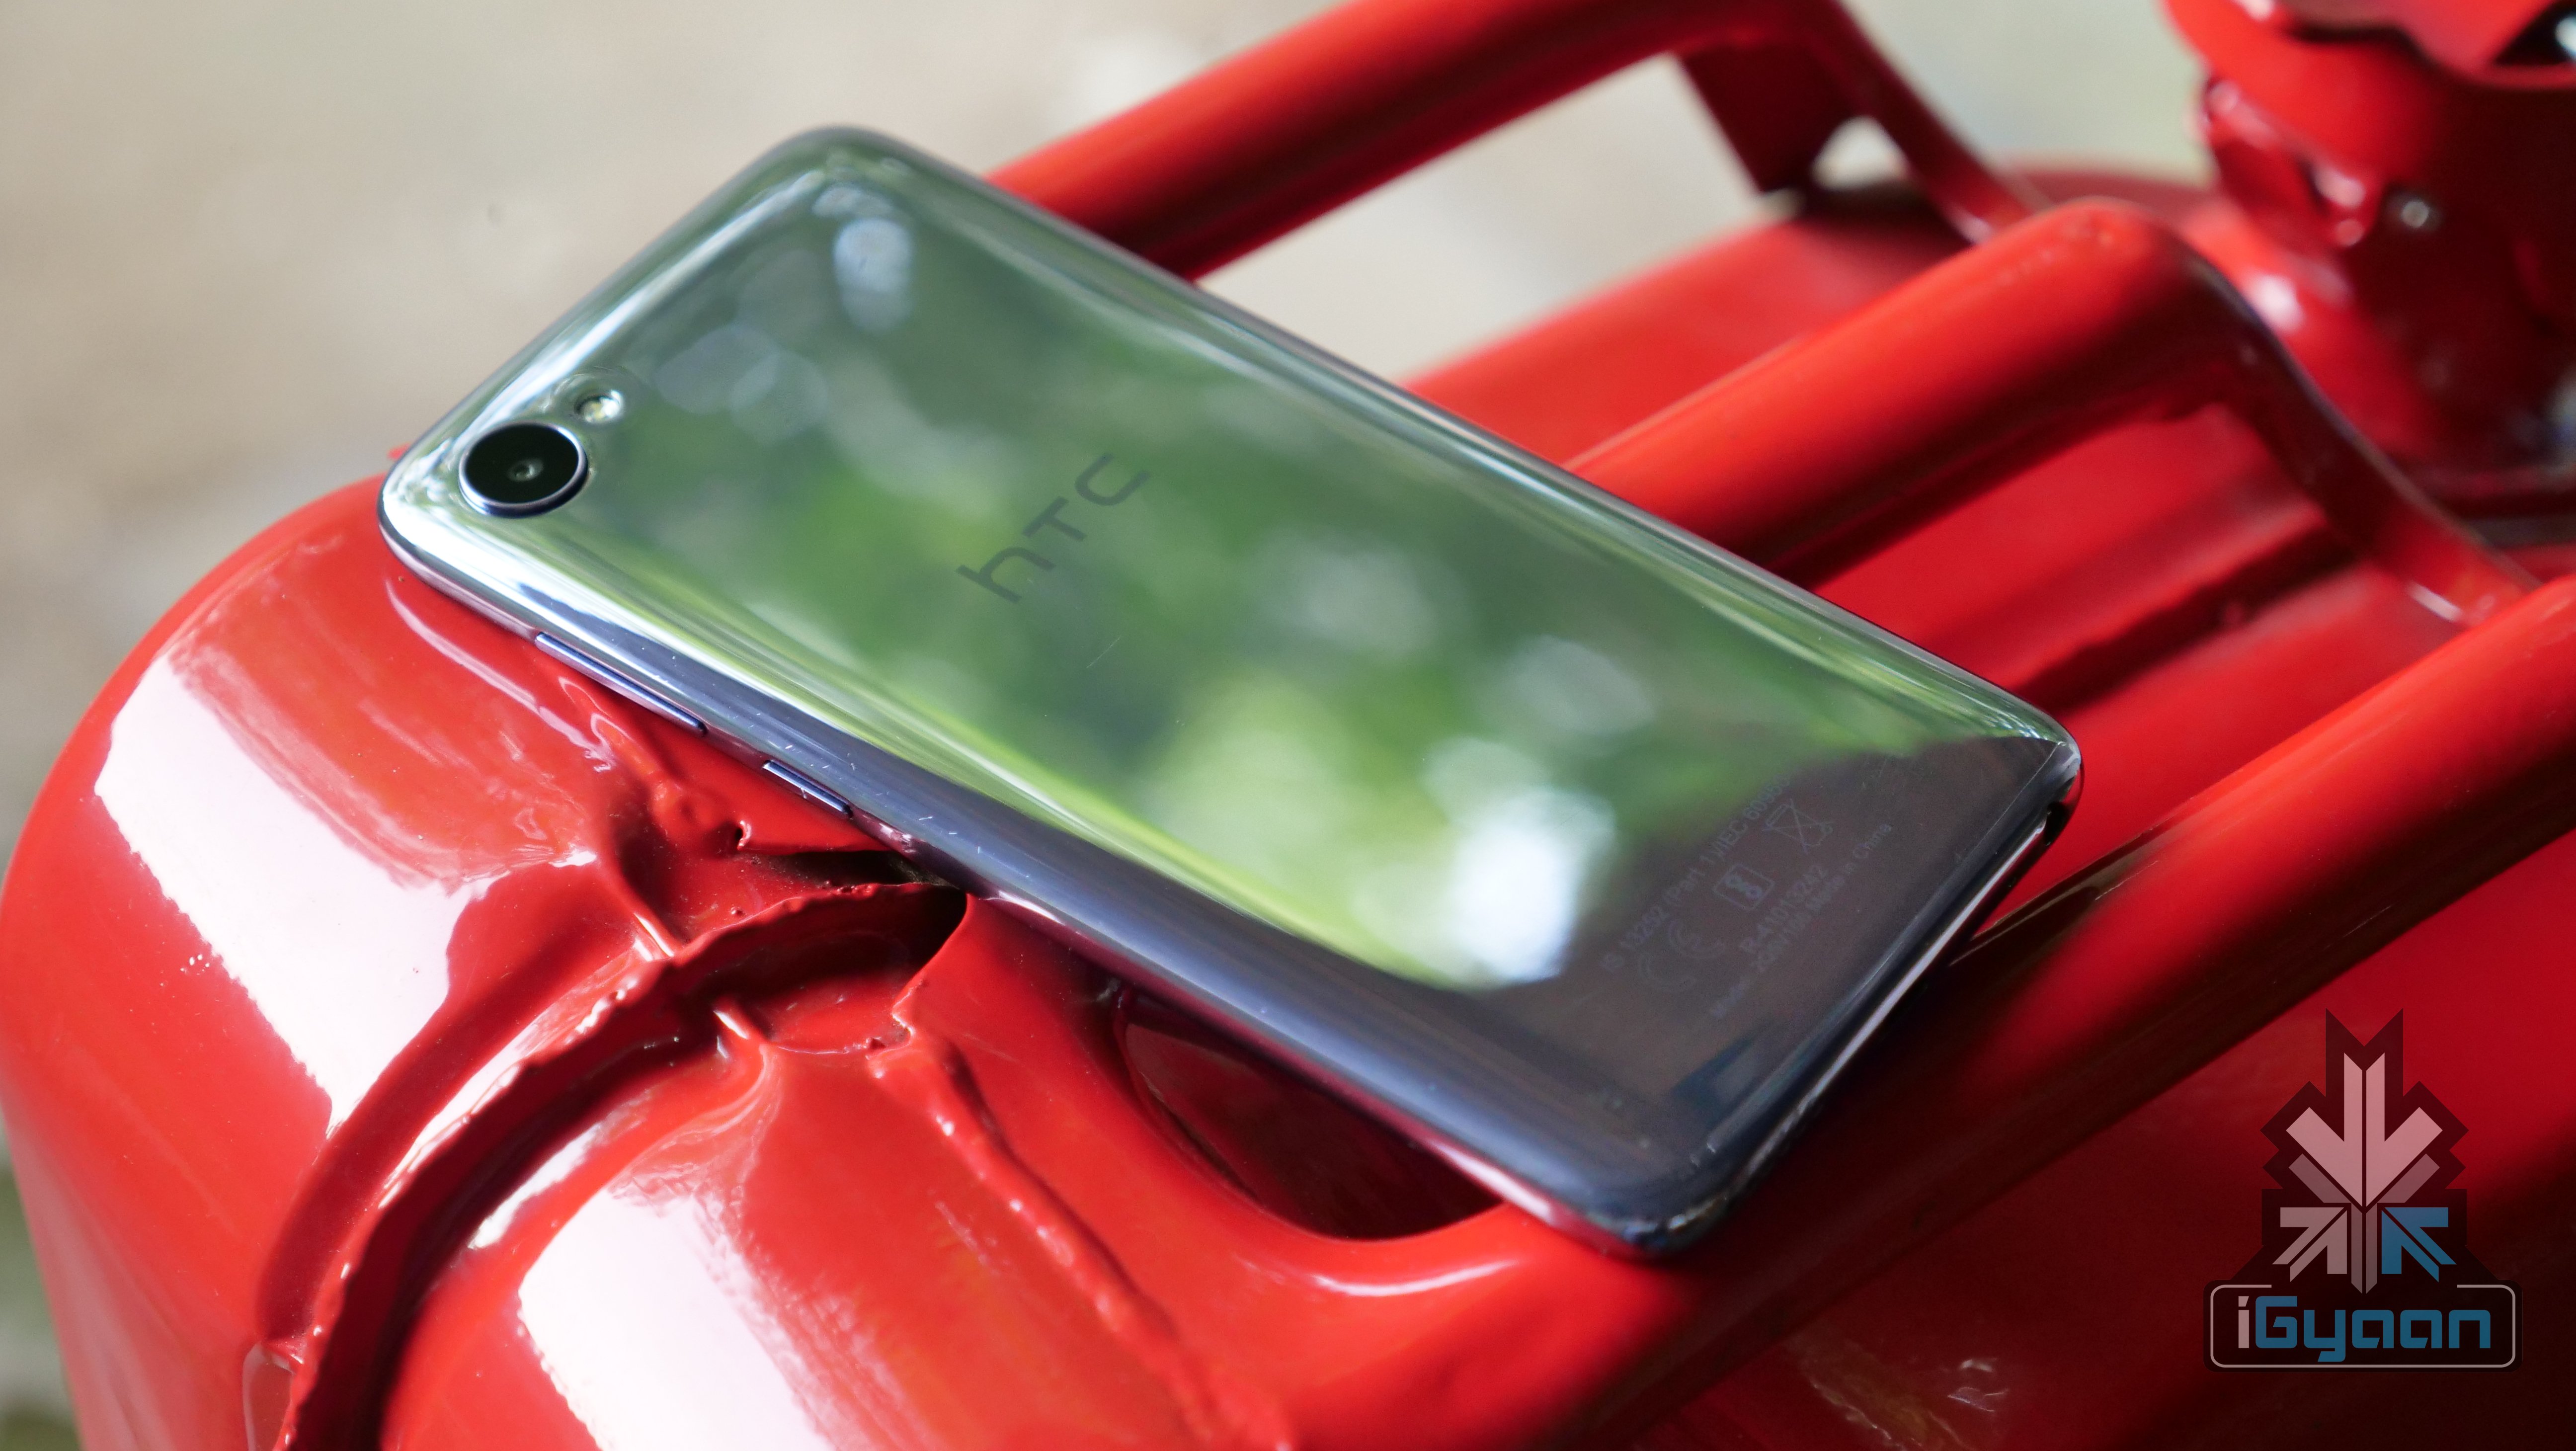 HTC Wildfire X Terdaftar Di Situs Web Android Enterprise, Diharapkan Segera Diluncurkan